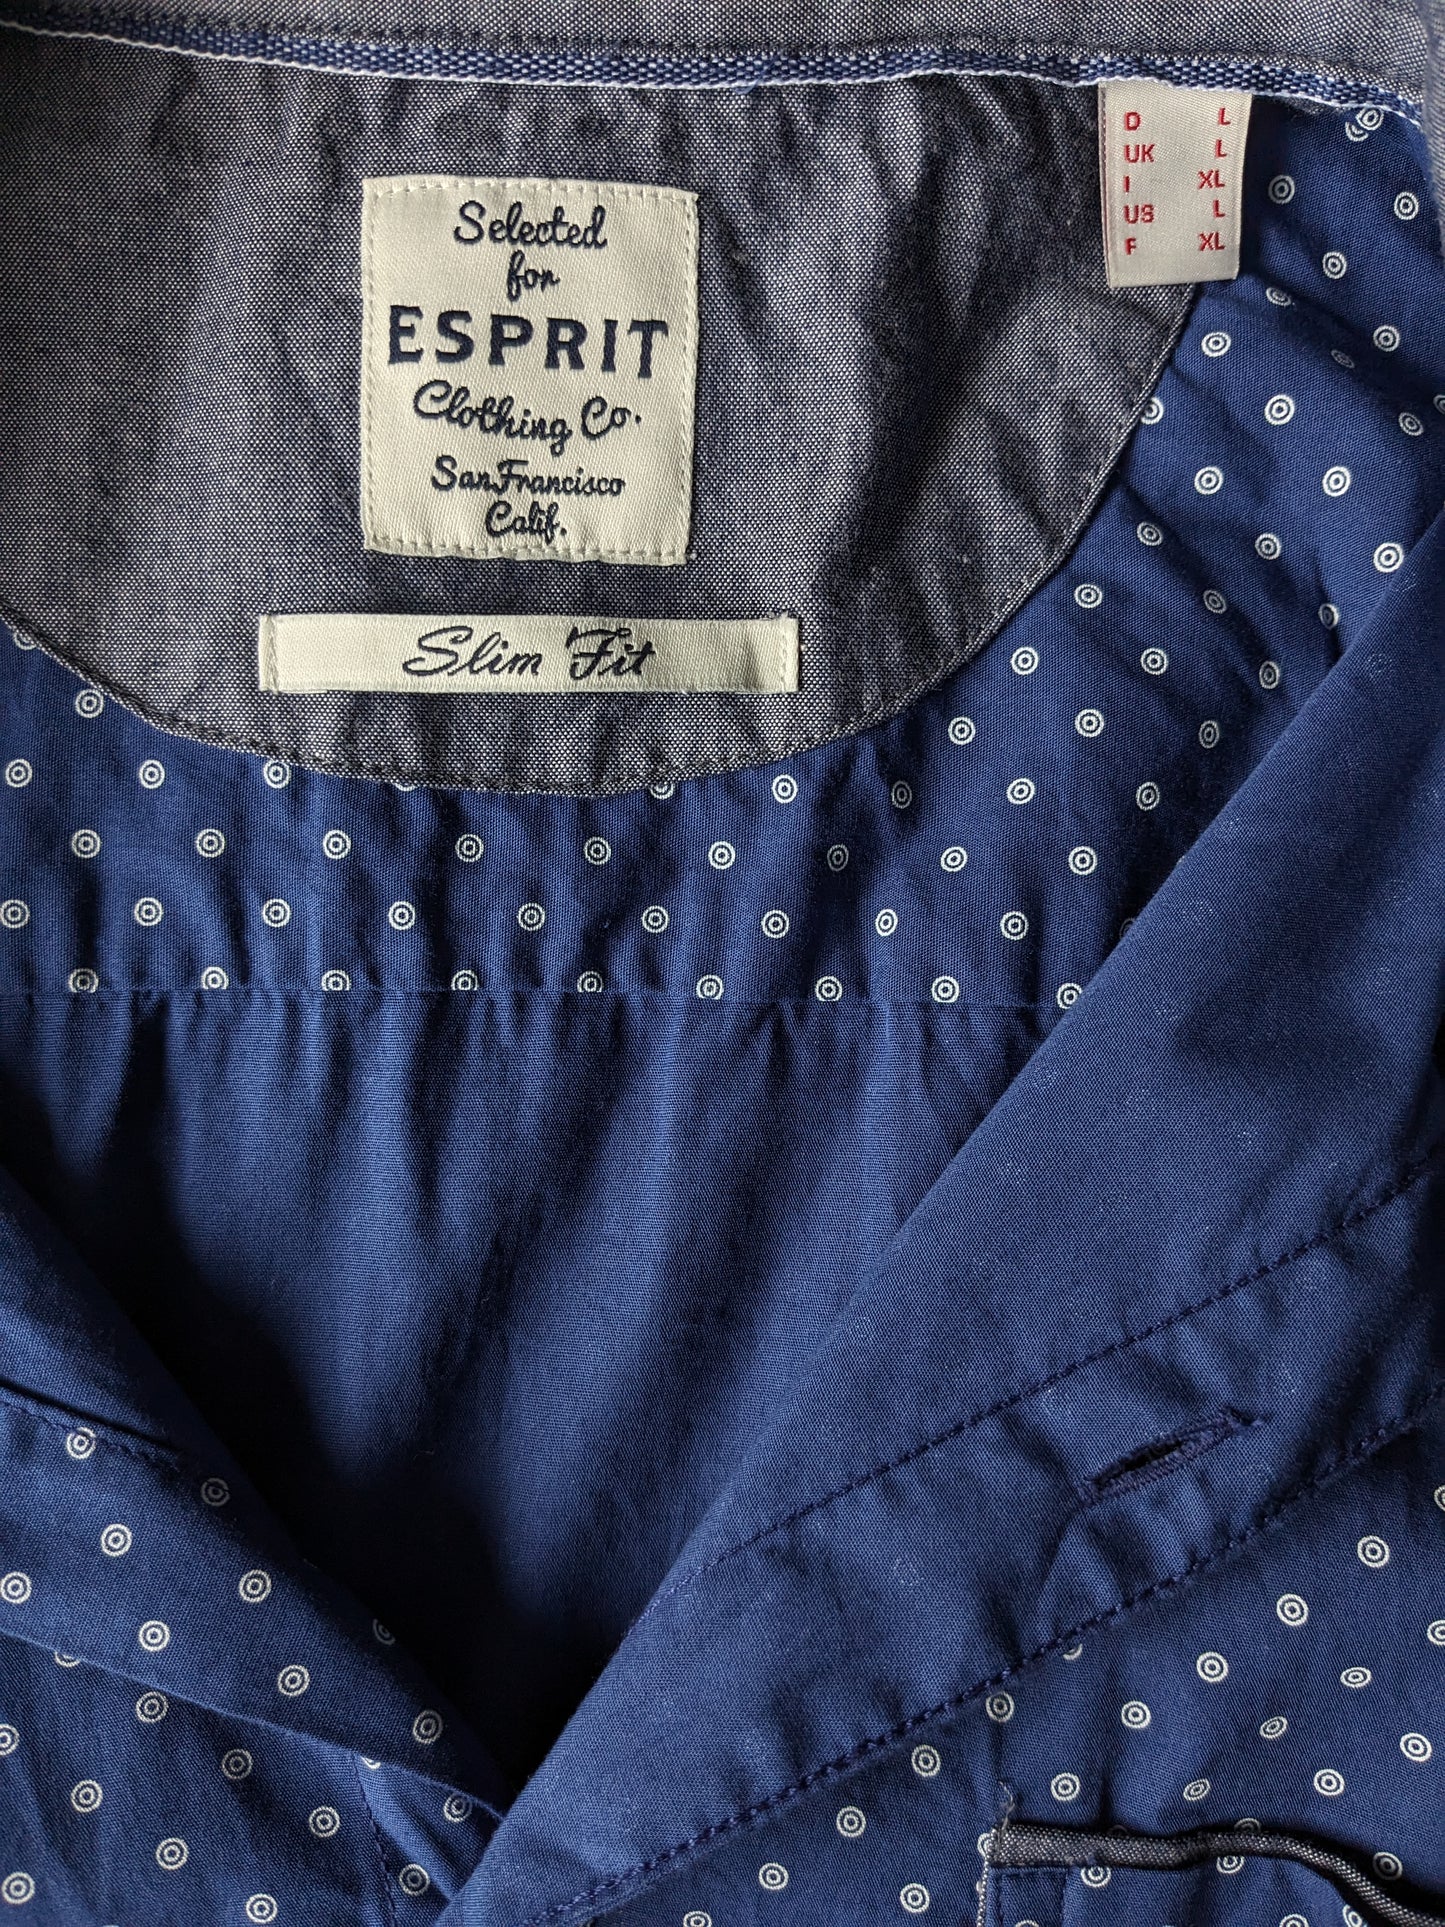 Esprit -Shirt Kurzarm. Blauer weißer Druck. Größe L. Slim Fit.